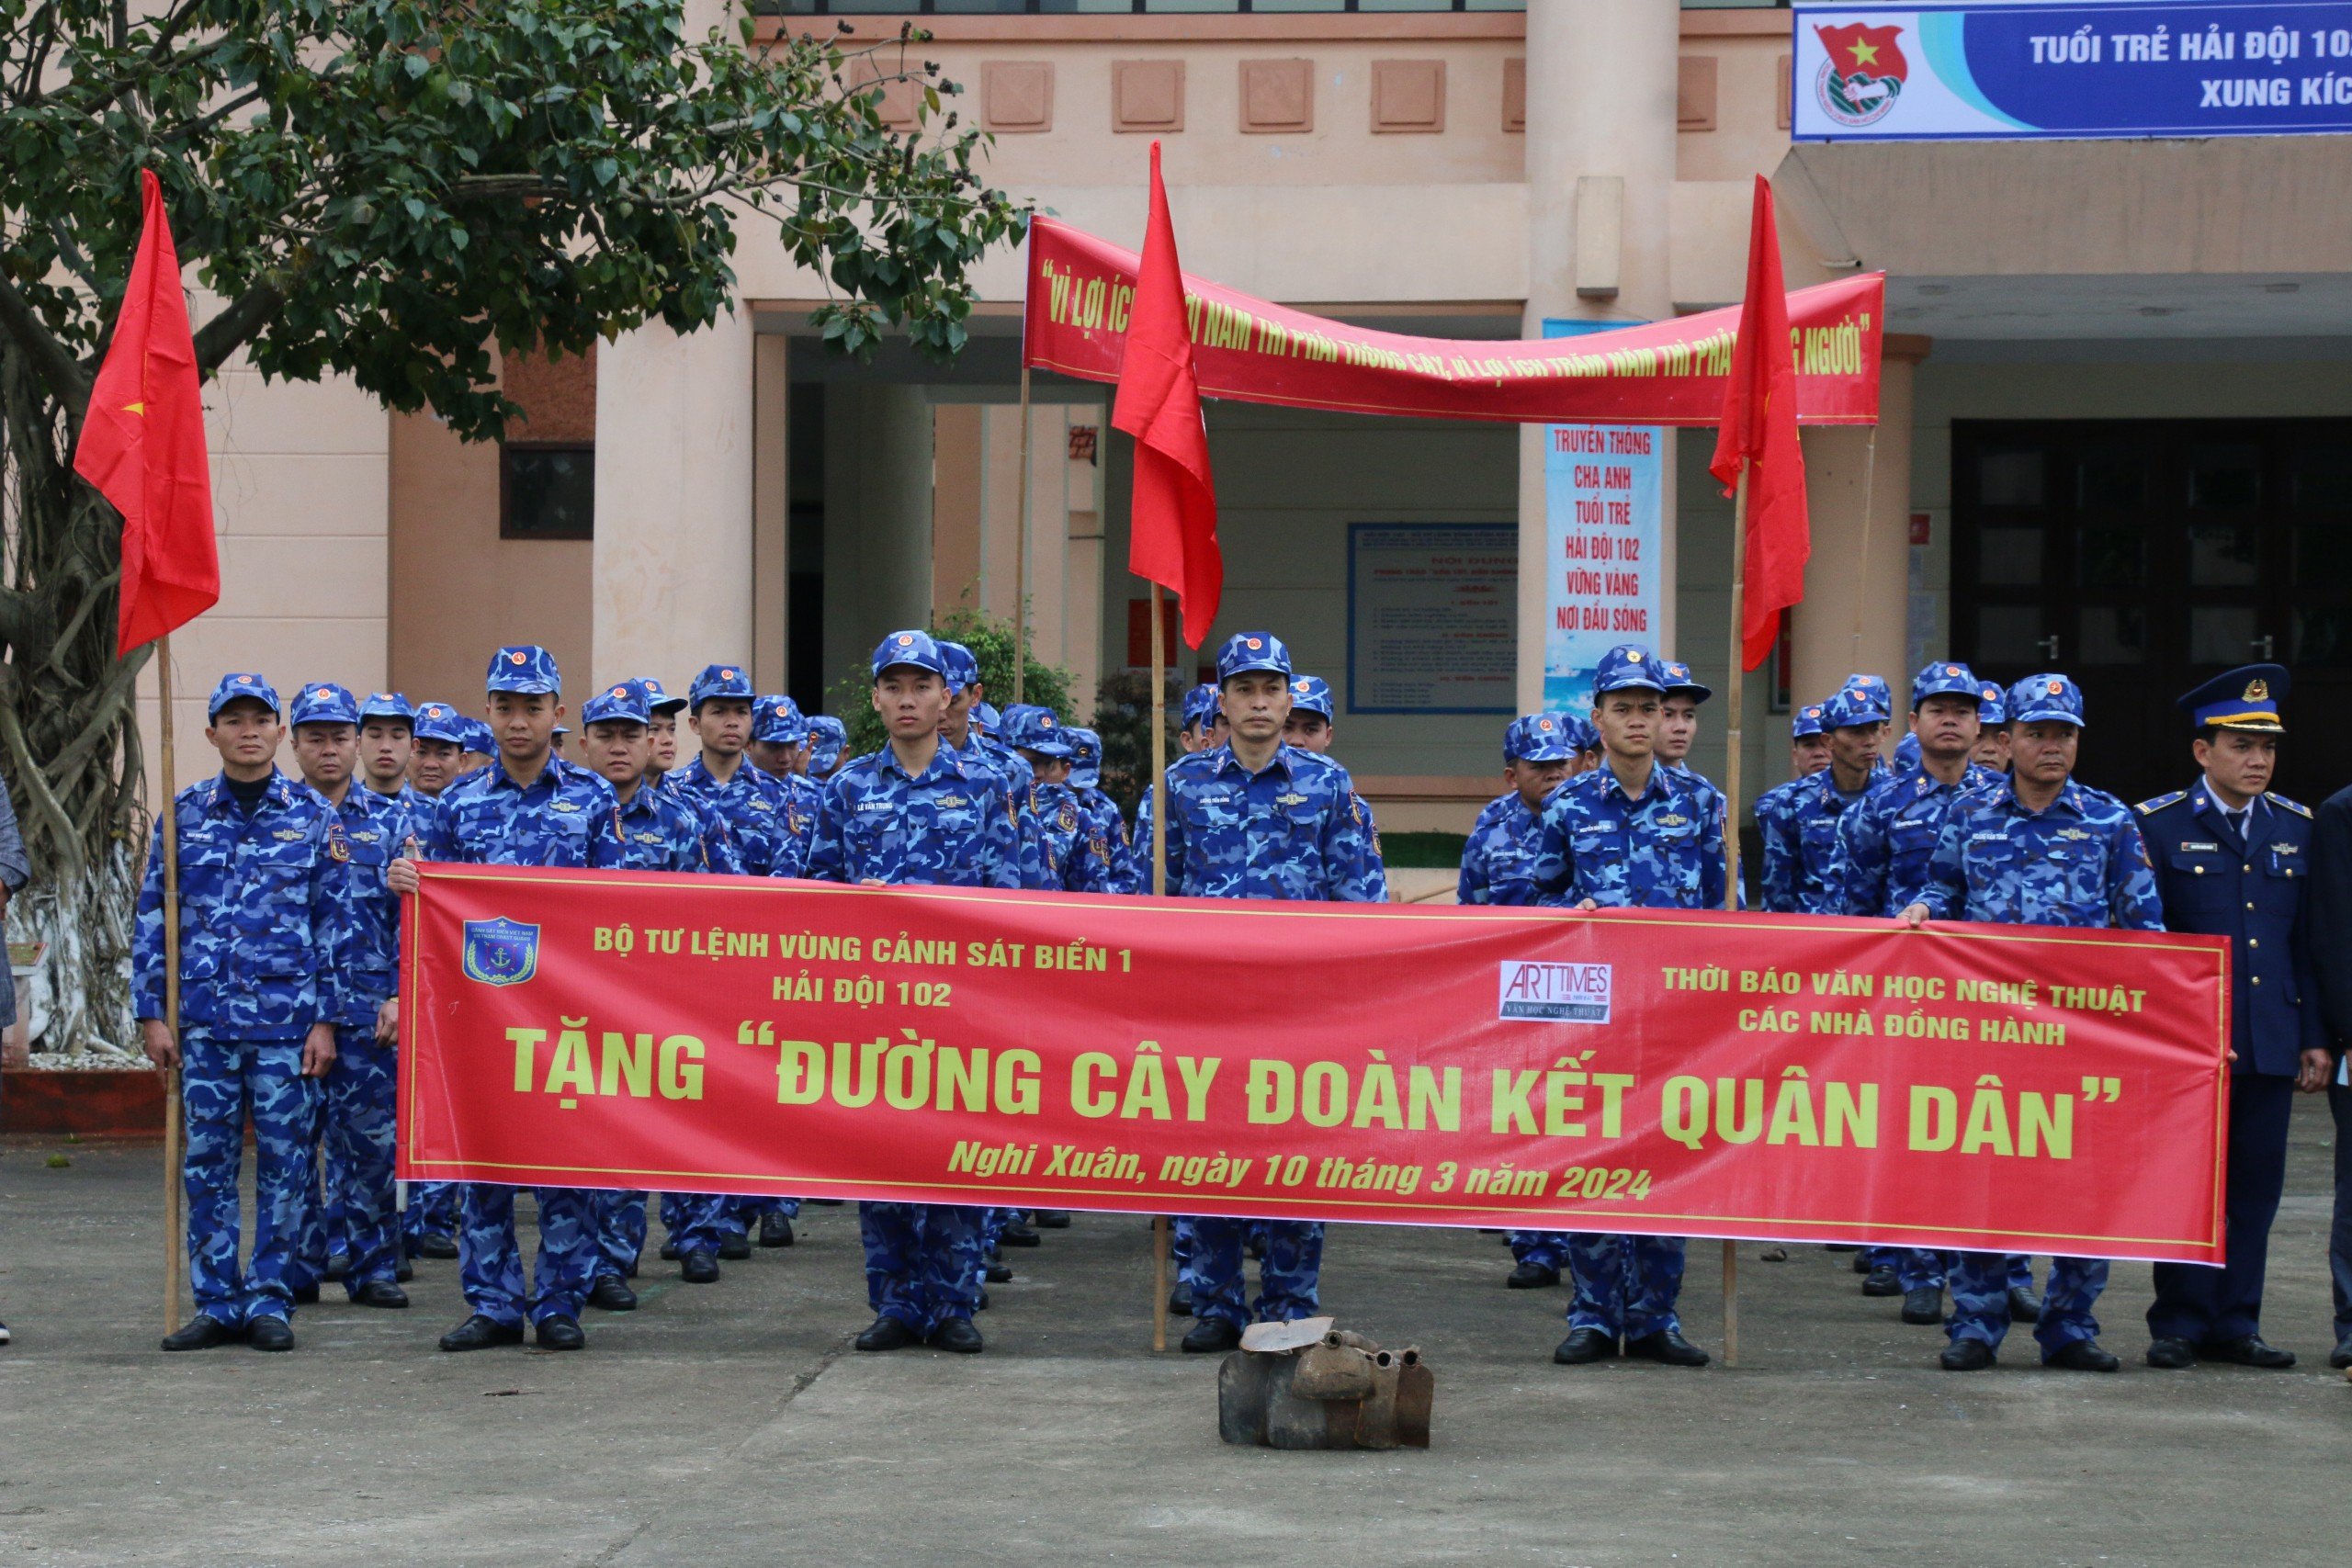 Hải đội 102, Bộ Tư lệnh Vùng Cảnh sát biển 1 tặng “Đường cây đoàn kết quân dân” cho người dân - 1